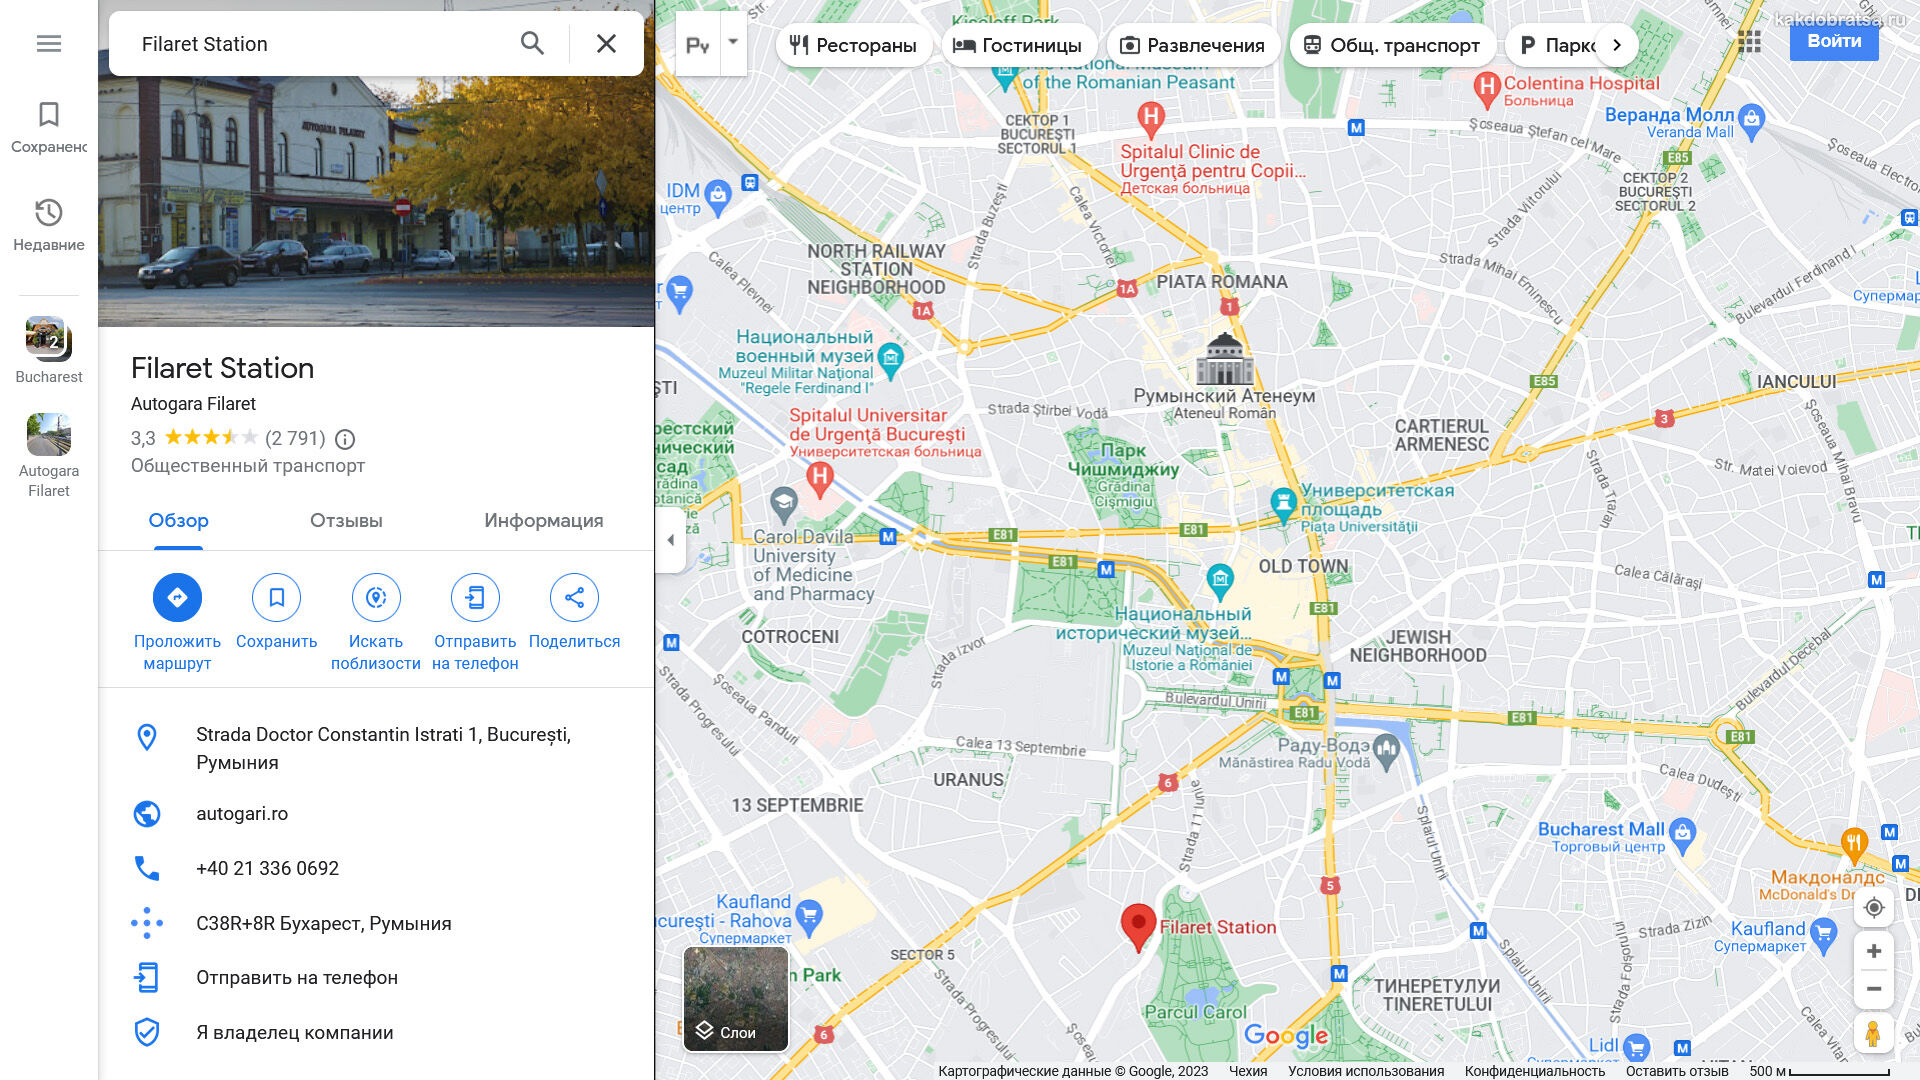 Бухарест автовокзал Филарет адрес и точка на карте